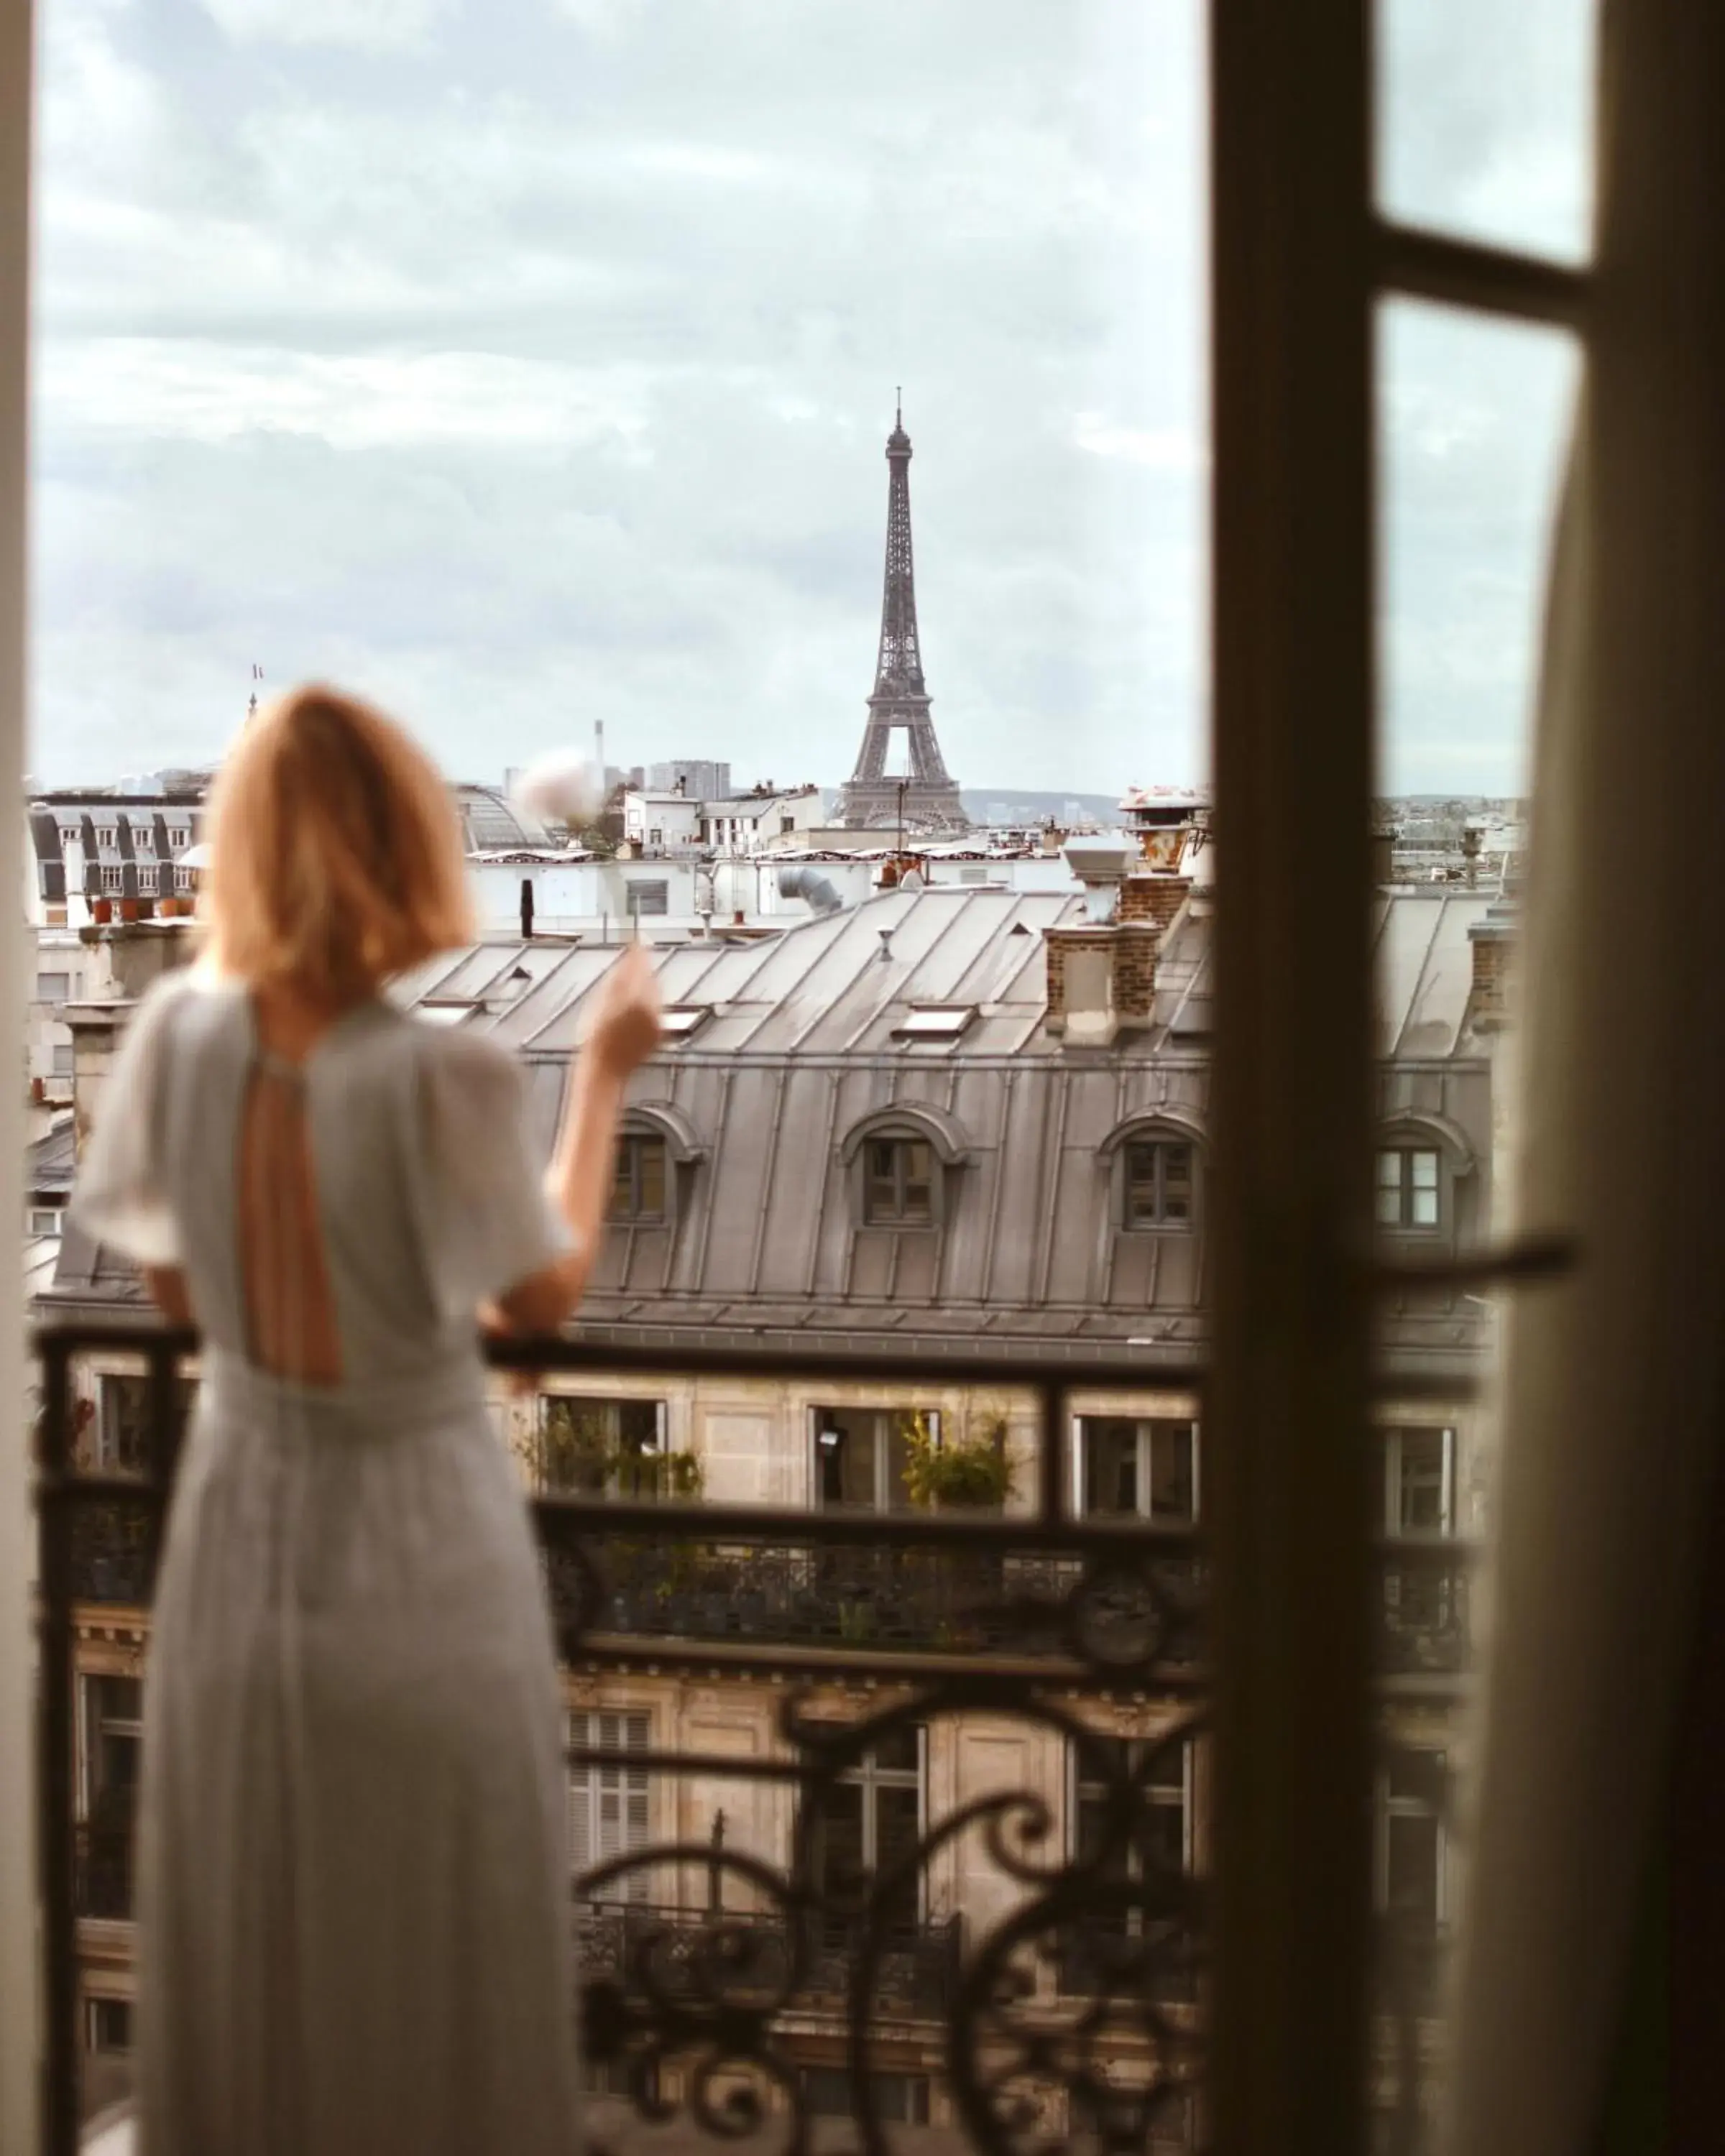 City view in Hyatt Paris Madeleine Hotel